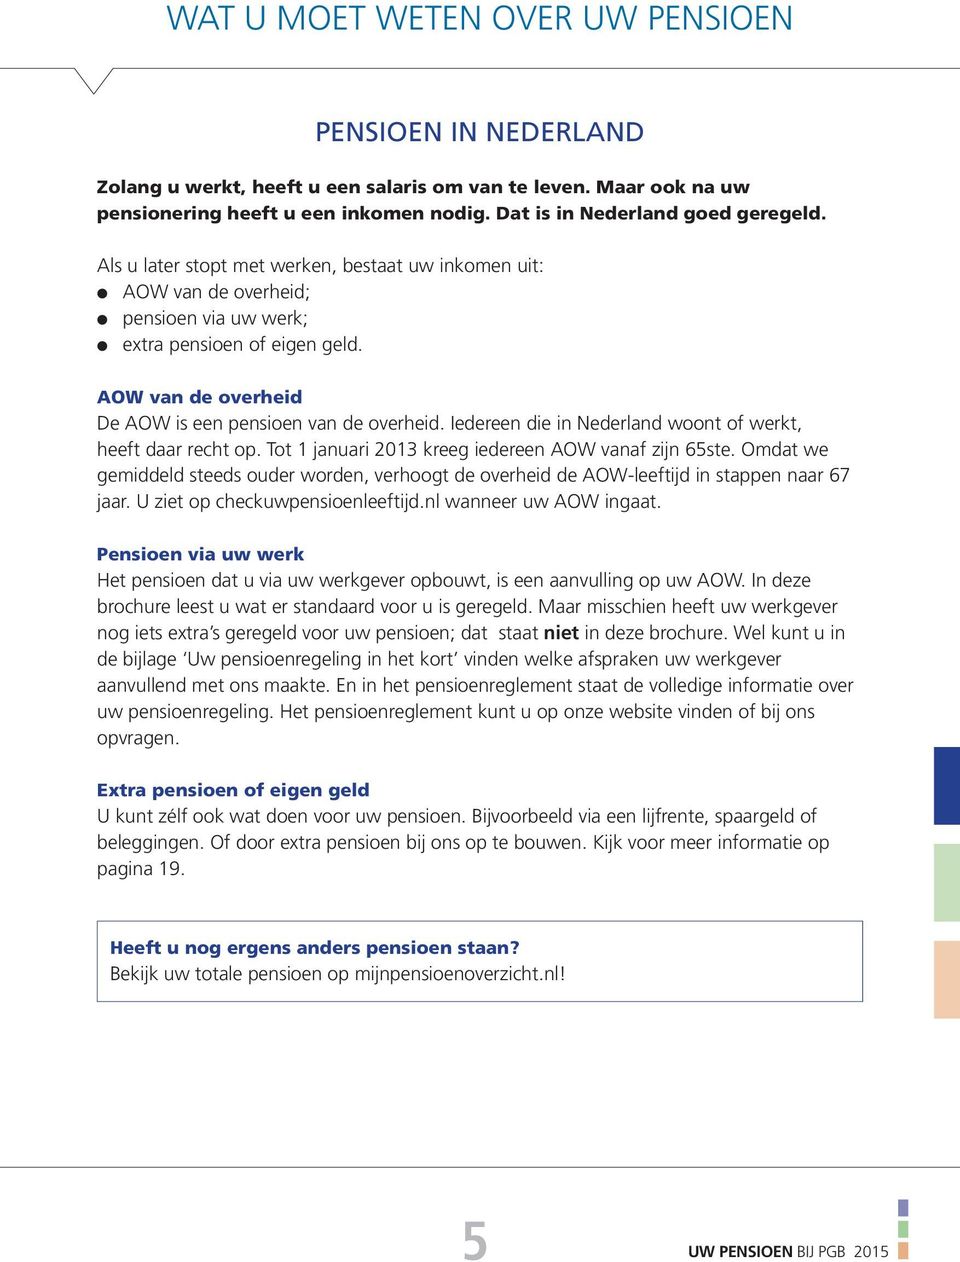 Iedereen die in Nederland woont of werkt, heeft daar recht op. Tot 1 januari 2013 kreeg iedereen AOW vanaf zijn 65ste.